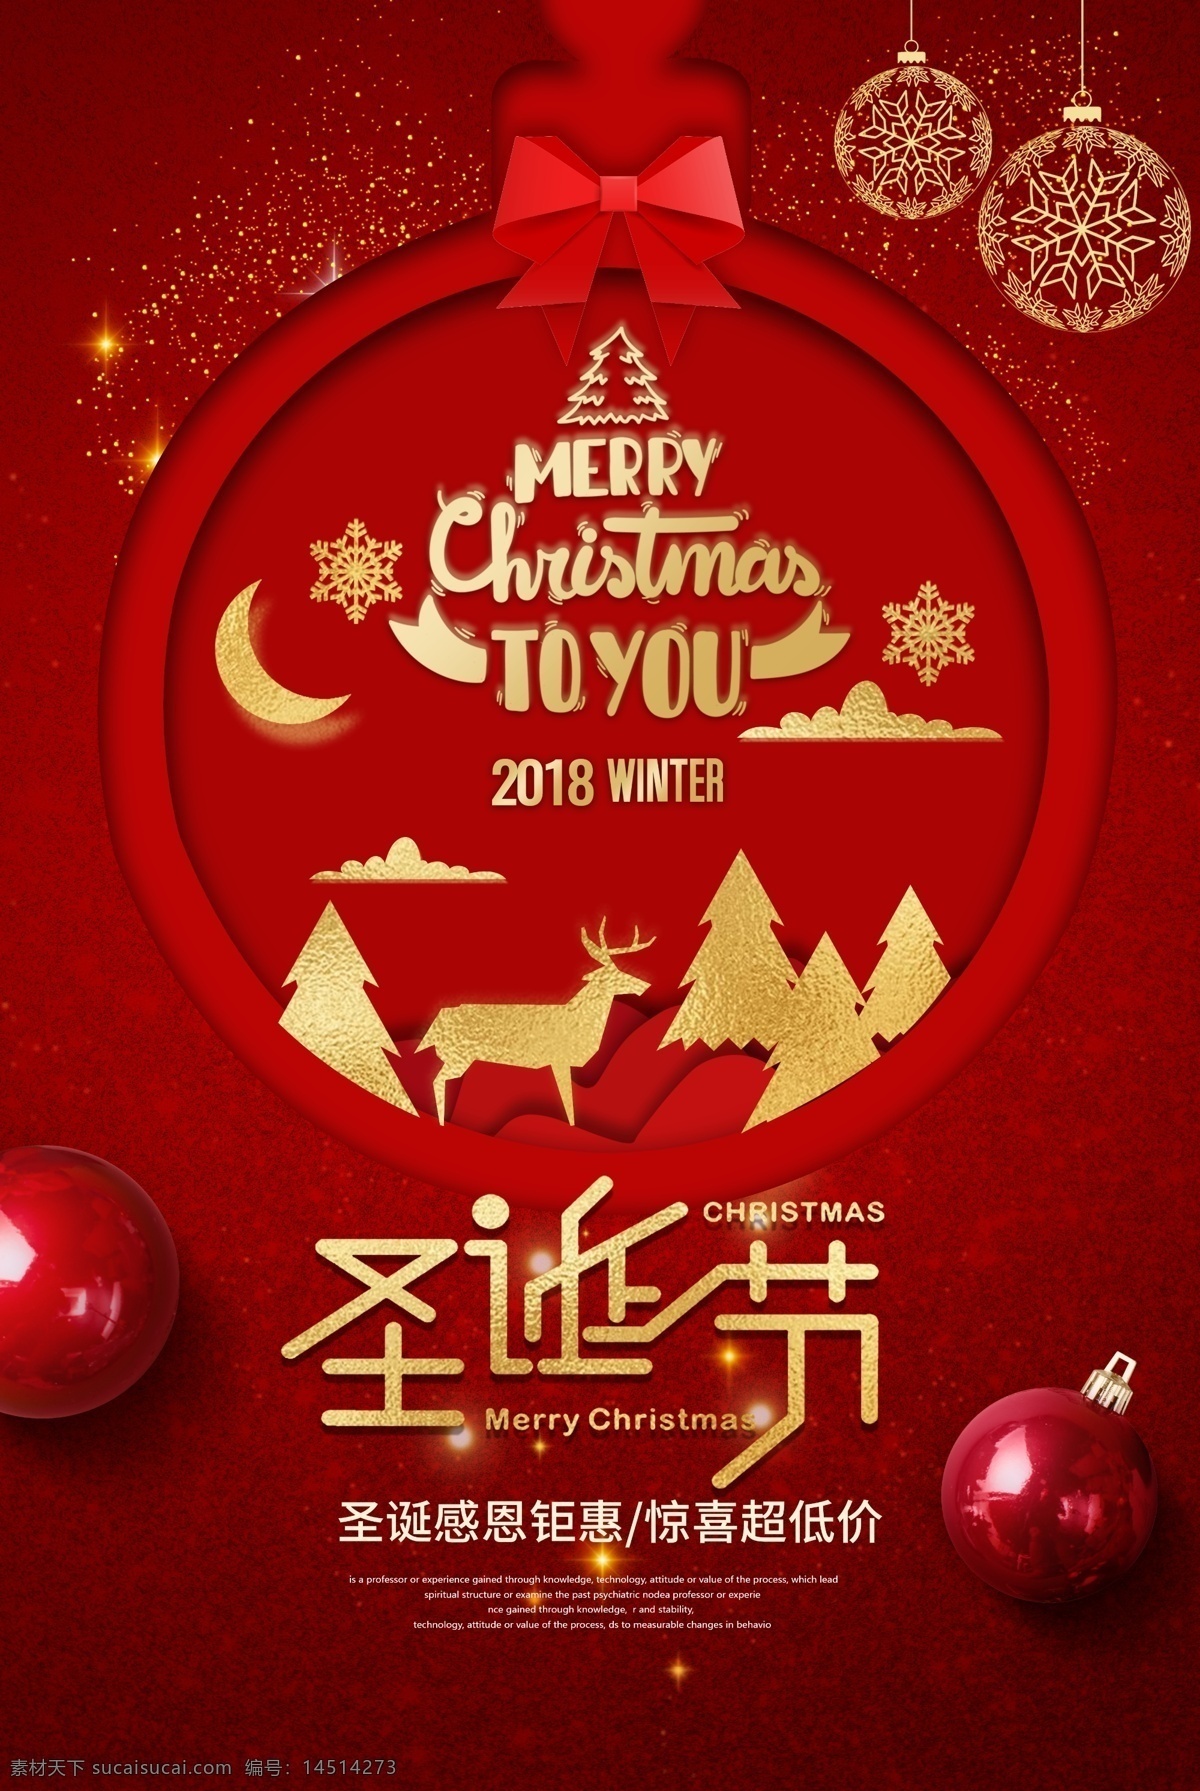 圣诞节 节日 活动 海报 素材图片 传统节日